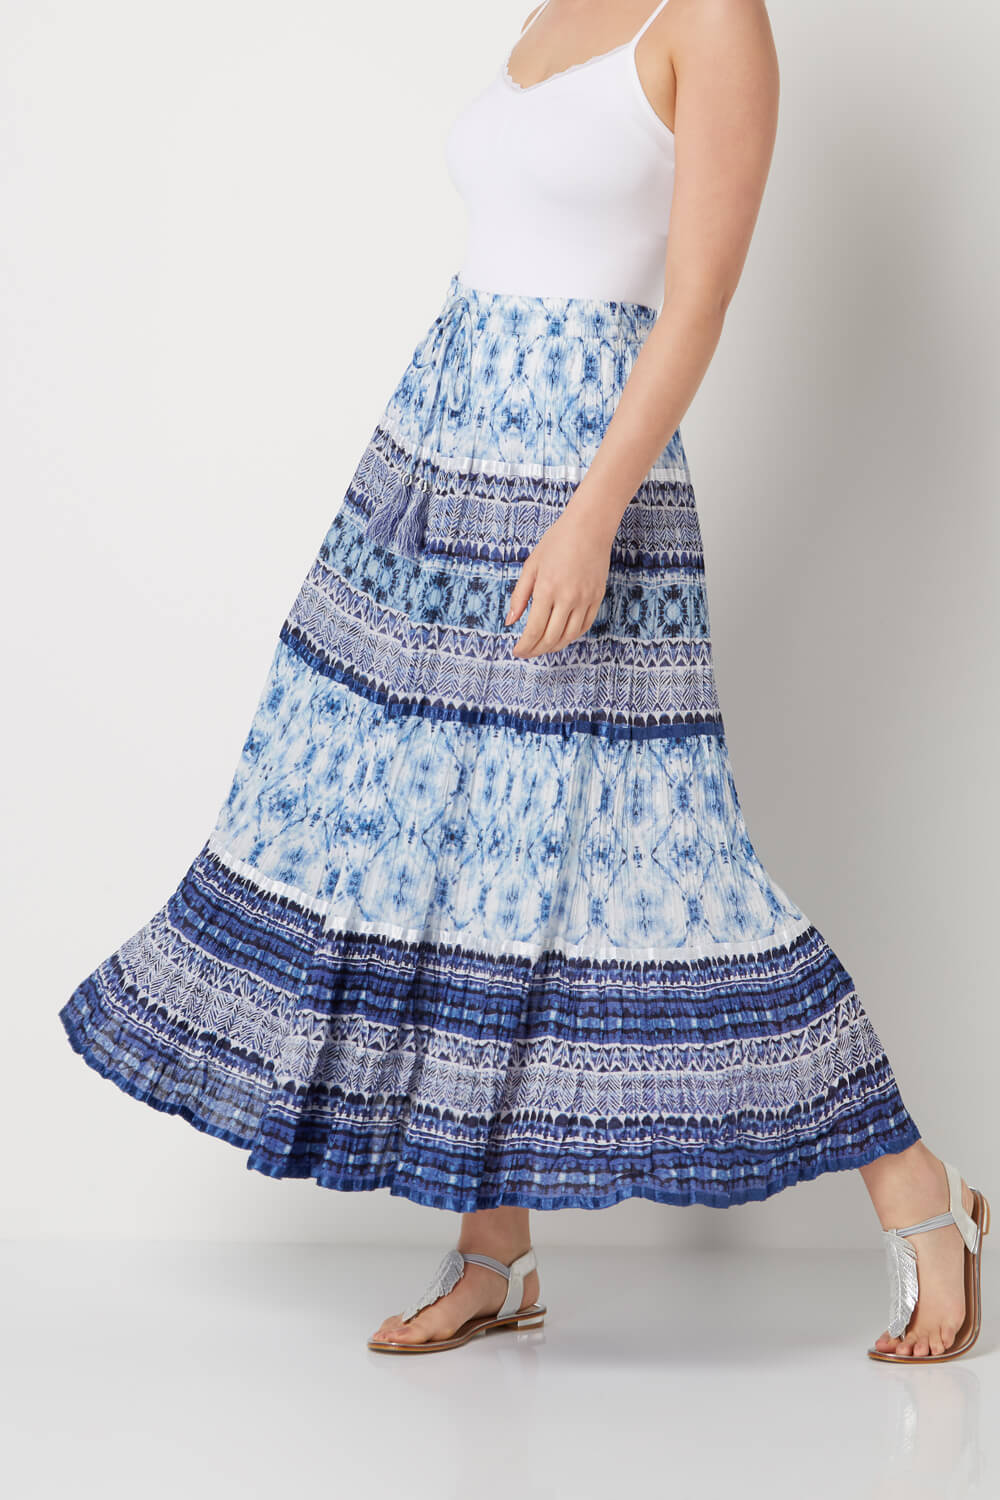 Tie-Dye Tiered Skirt in Blue - Roman Originals UK